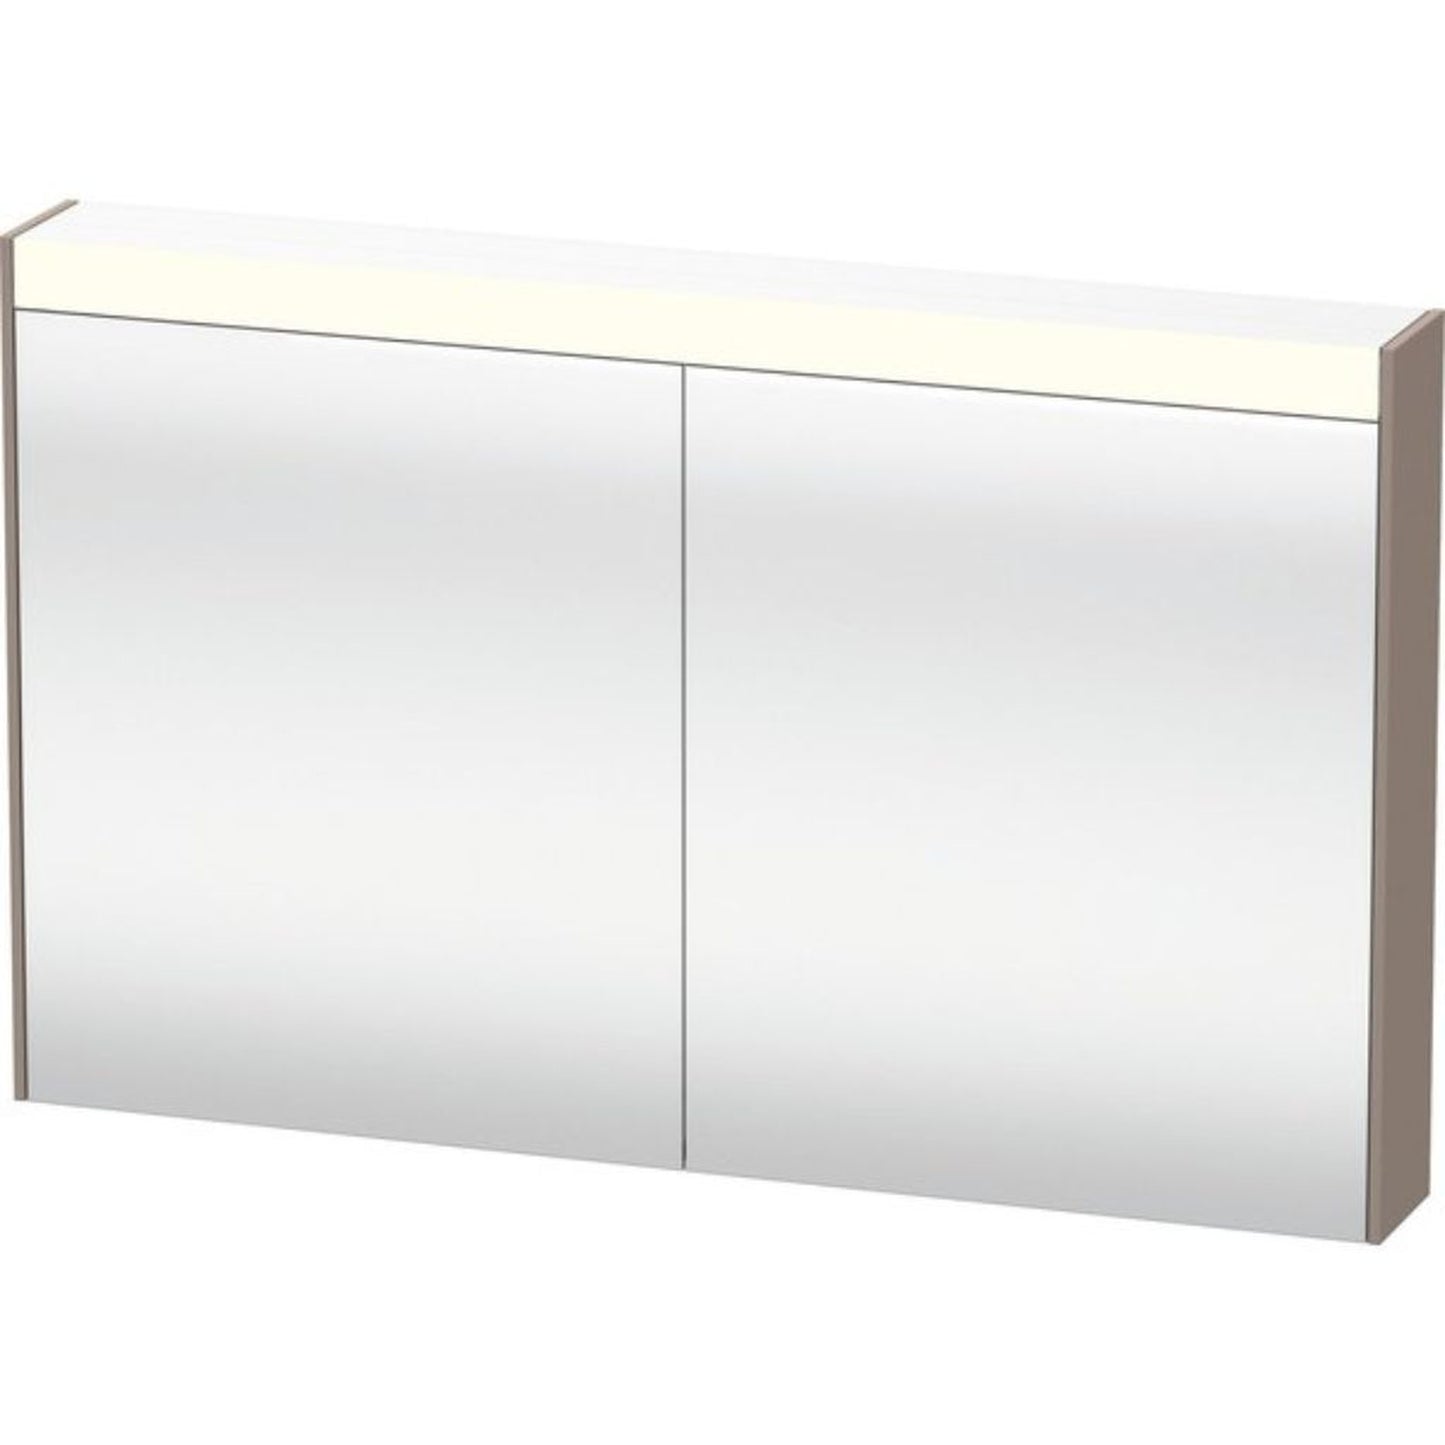 Duravit Brioso 48" x 30" x 6" Mirror Cabinet With Lighting Basalt Matt